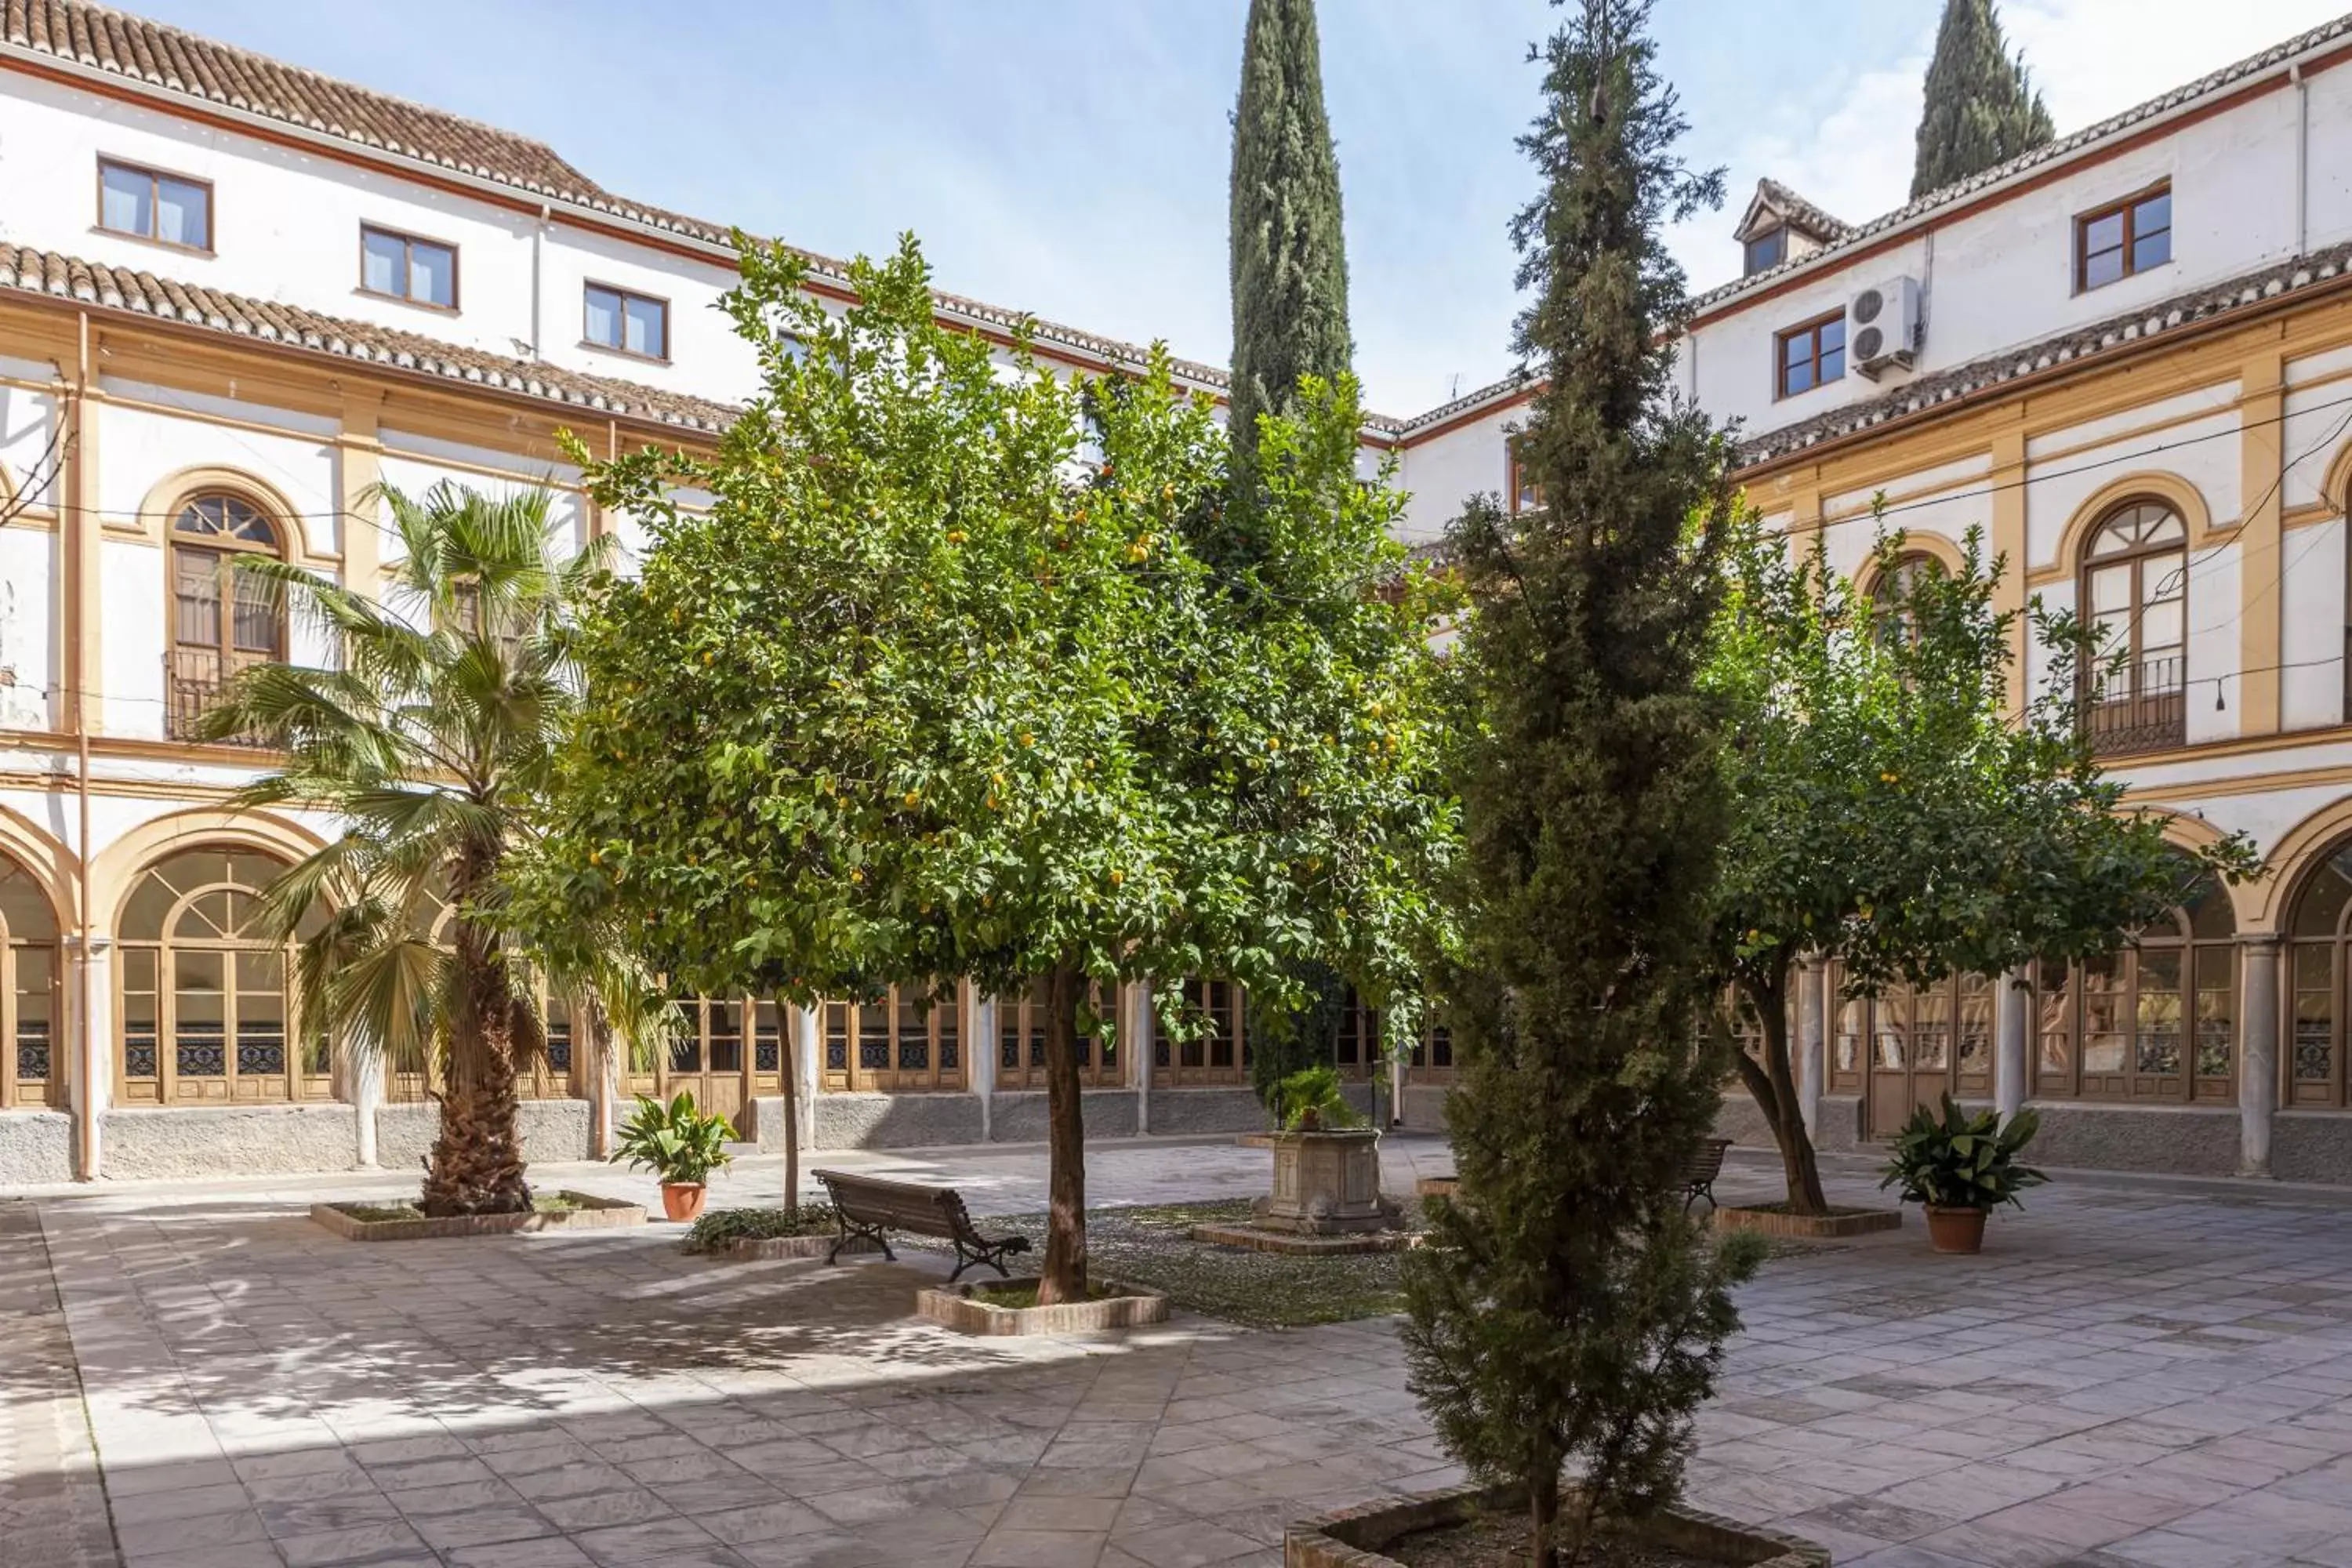 Area and facilities, Property Building in Hotel Macià Monasterio de los Basilios